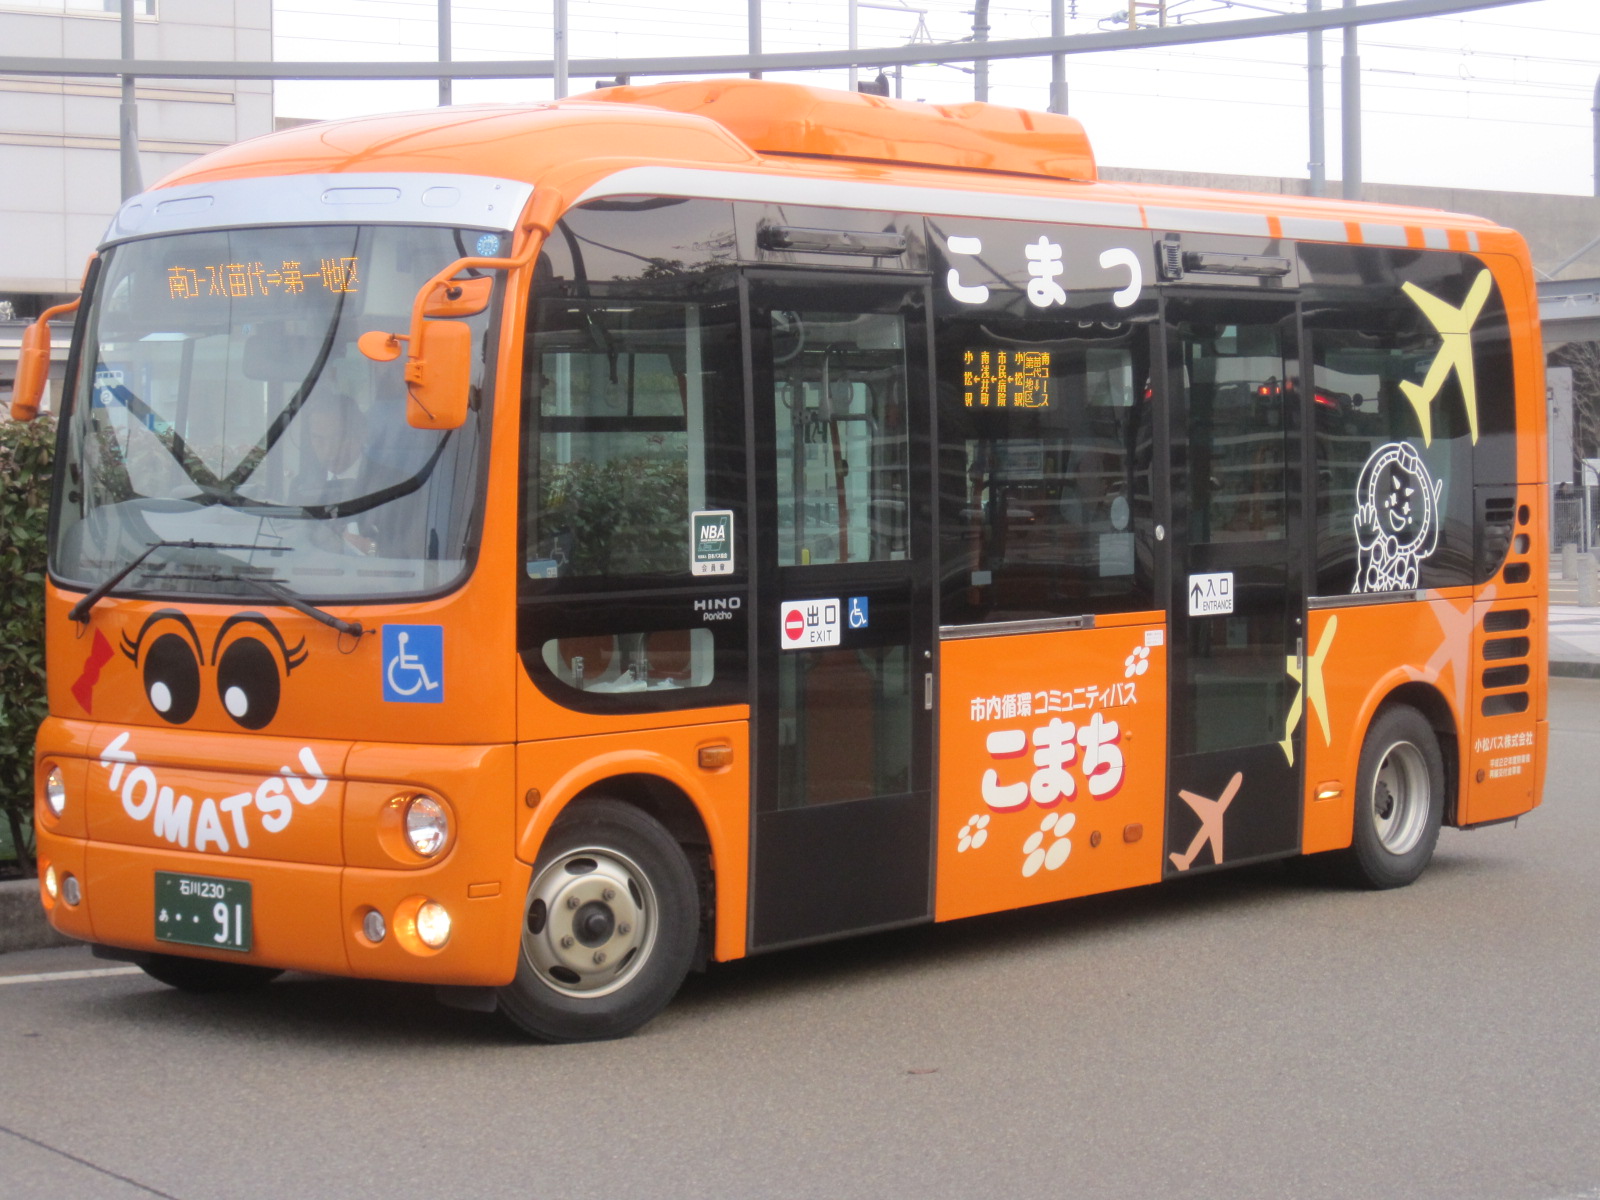 Оранжевый автобус. Yutong автобус оранжевый. Школьные автобусы с оранжевым маячком. Автобус апельсин.